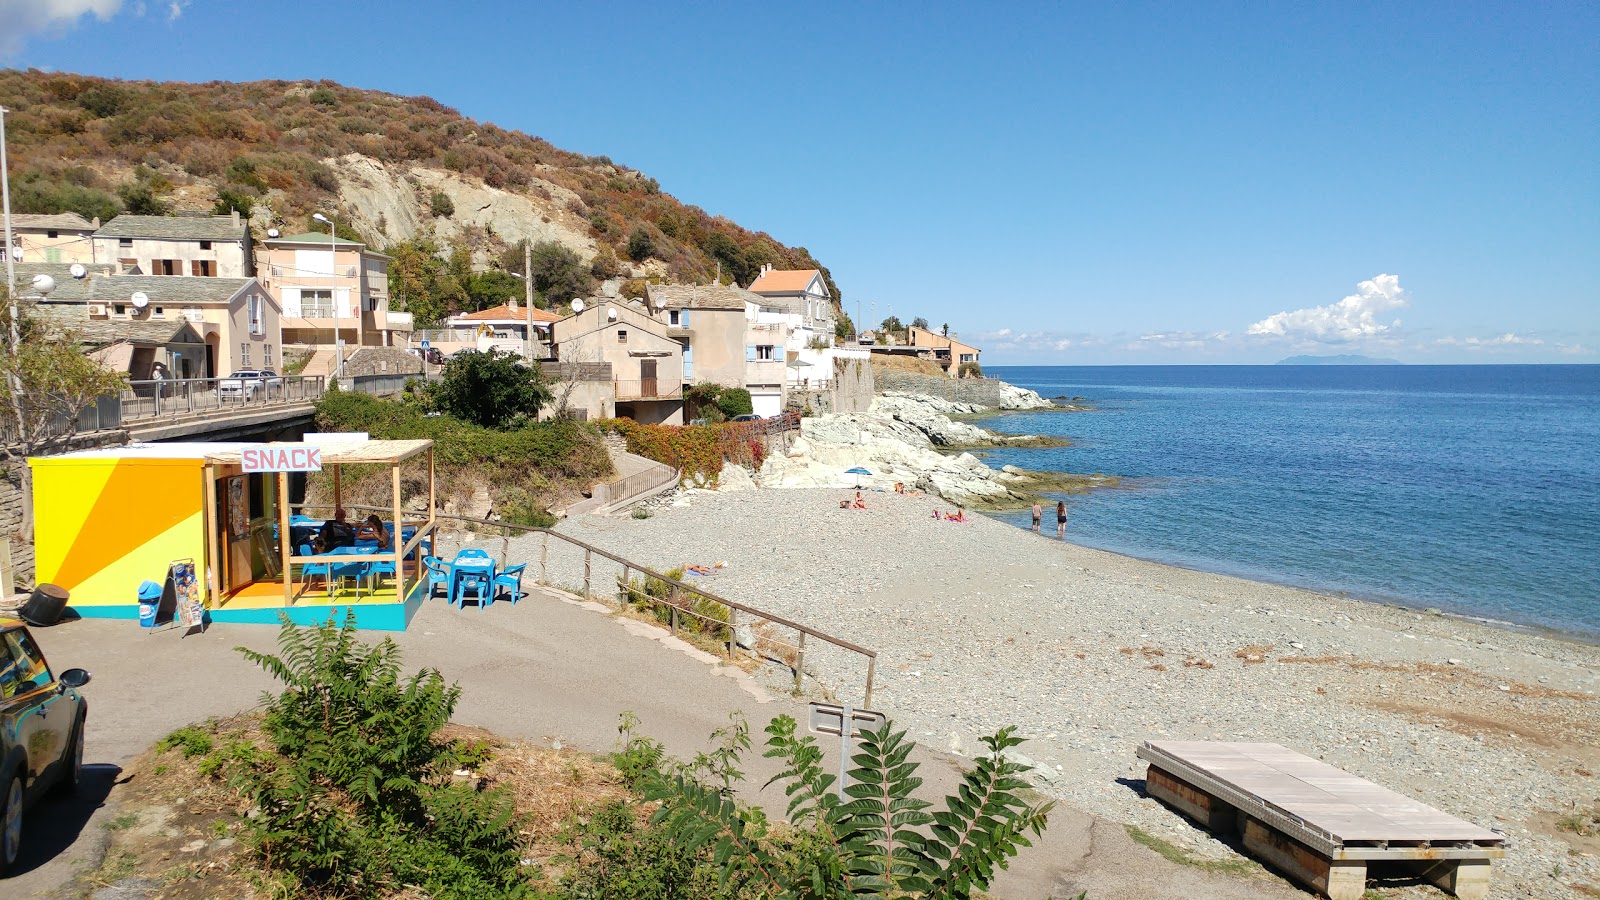 Grisgione beach'in fotoğrafı ve yerleşim